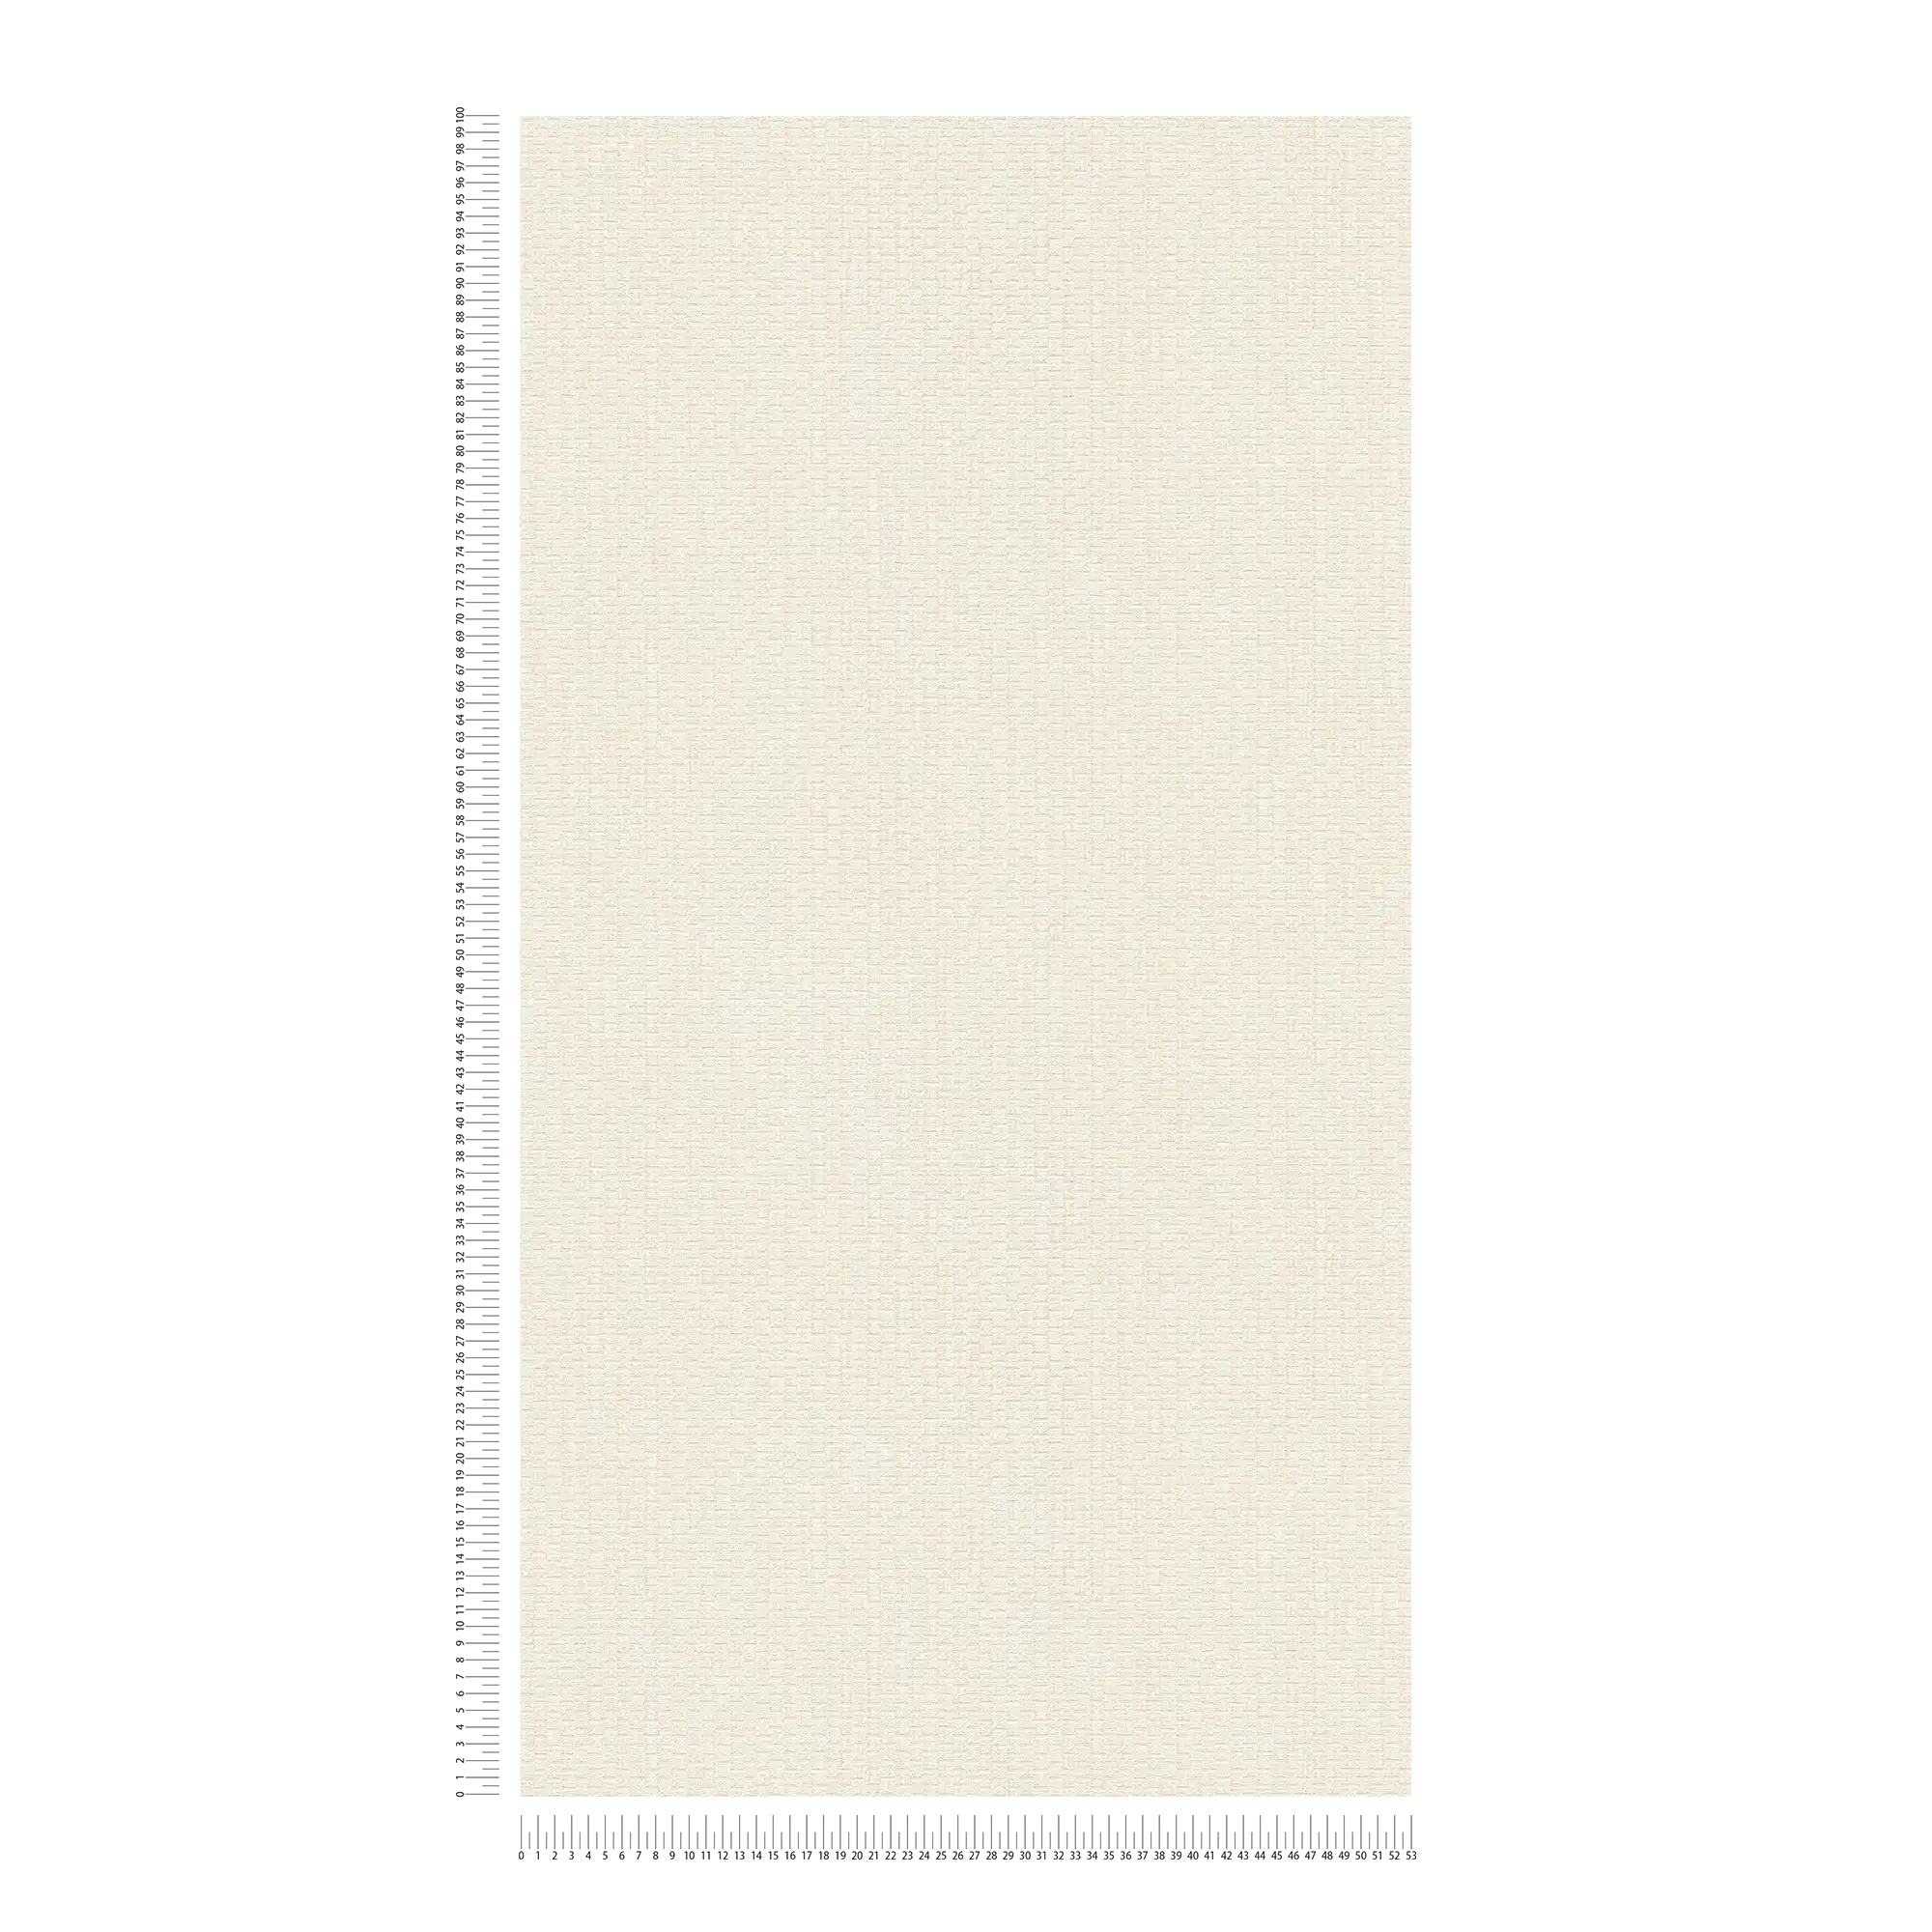             Carta da parati con disegno di stuoie di rafia - crema, bianco
        